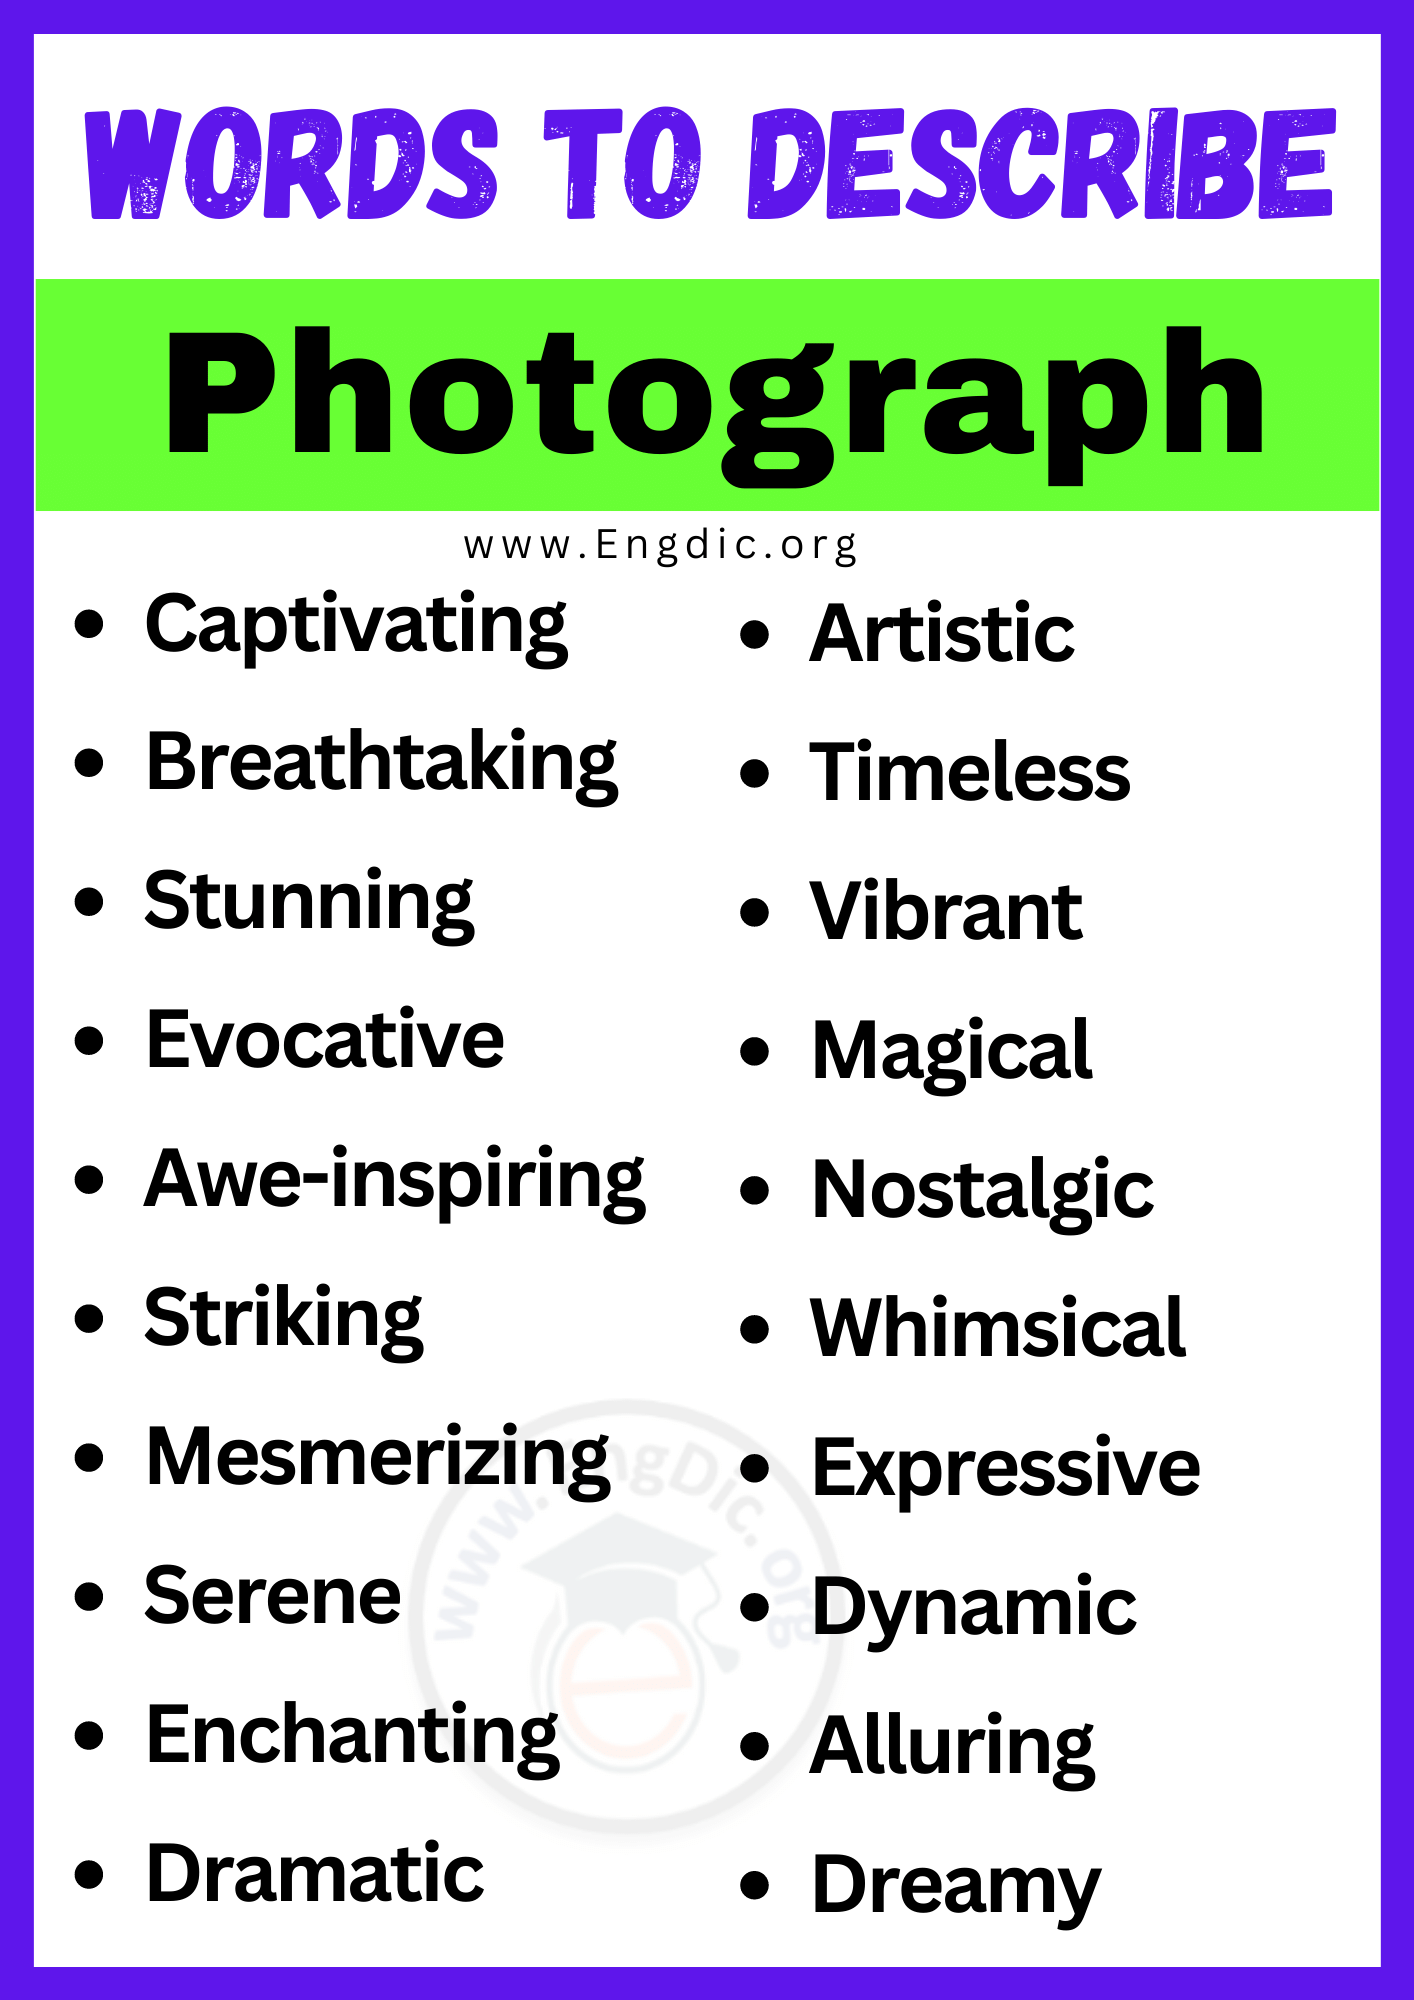 Words to Describe Photograph